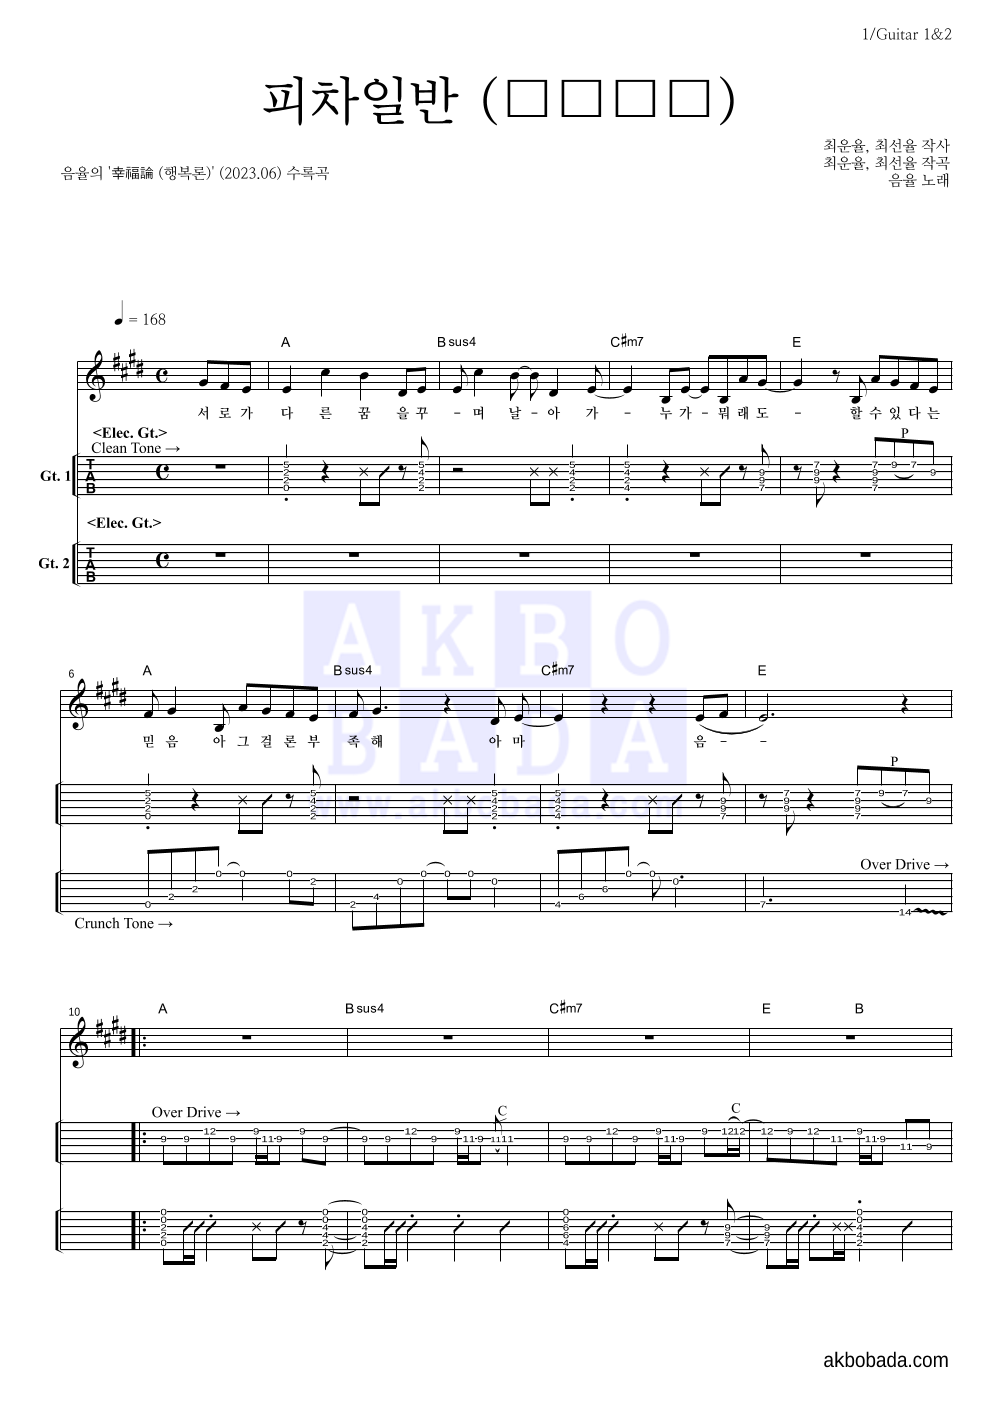 음율 - 피차일반 (彼此一般) 기타(Tab) 악보 